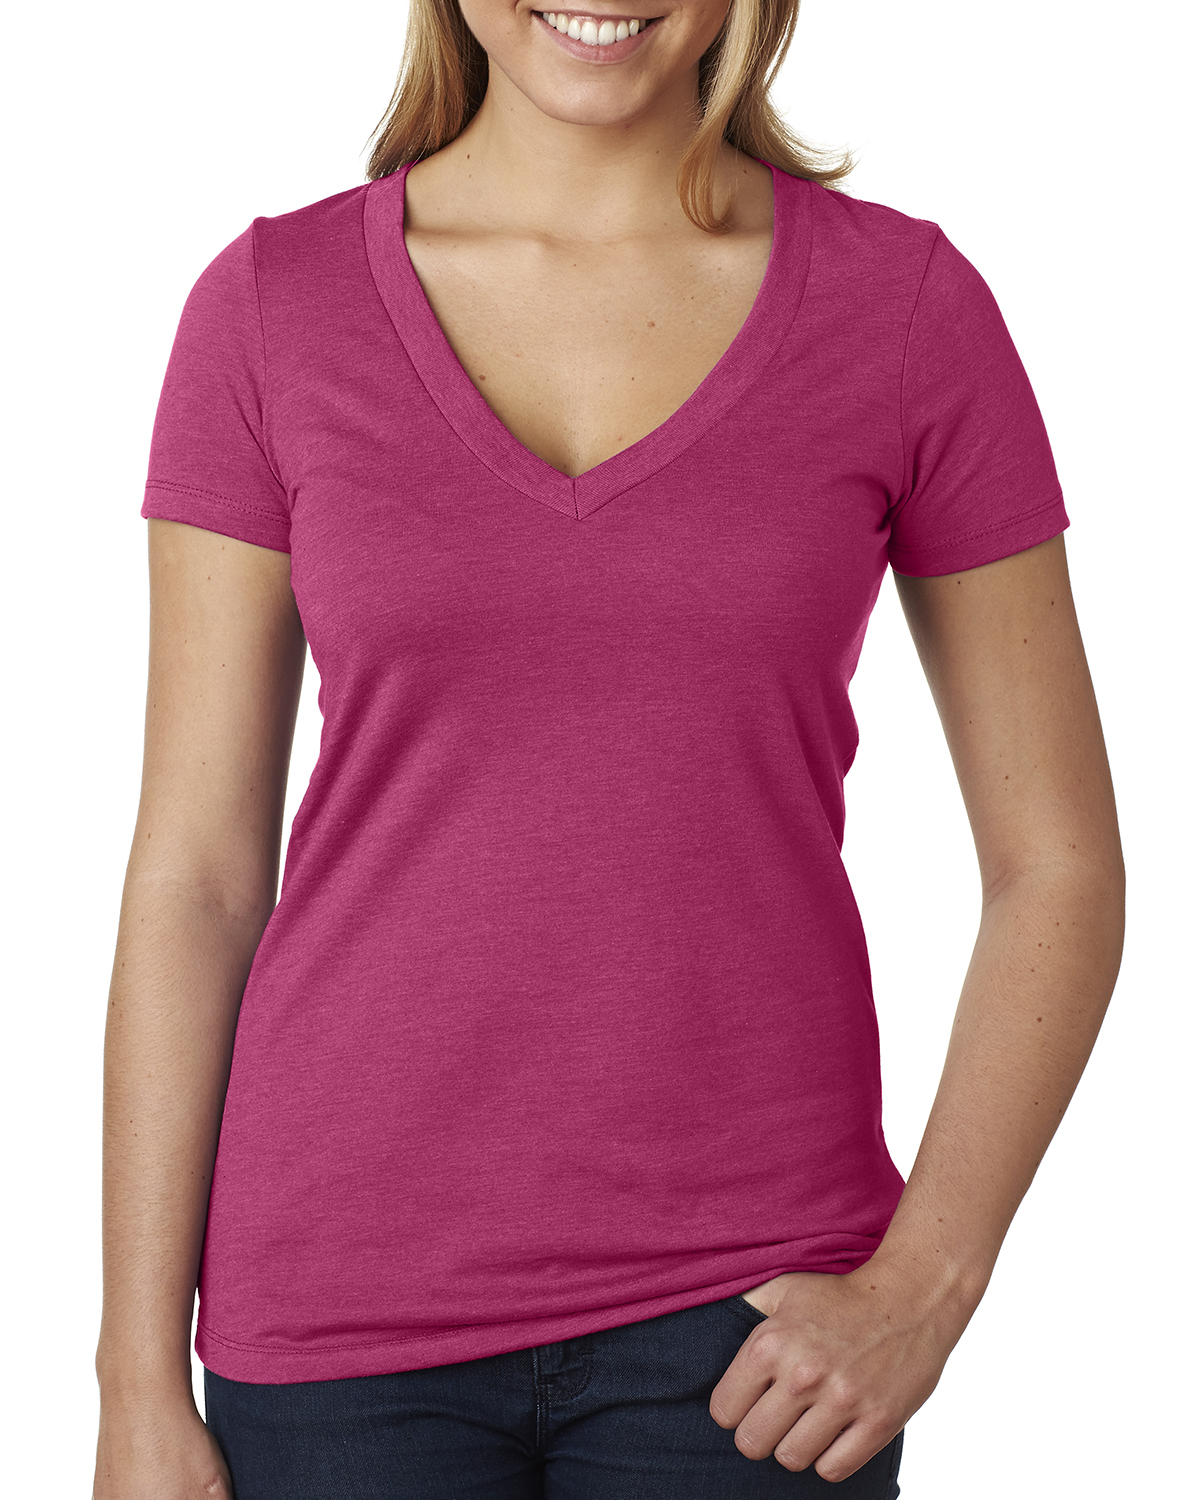 Women's T-shirt See-Through Deep V Neck Shirt Knot Front Short